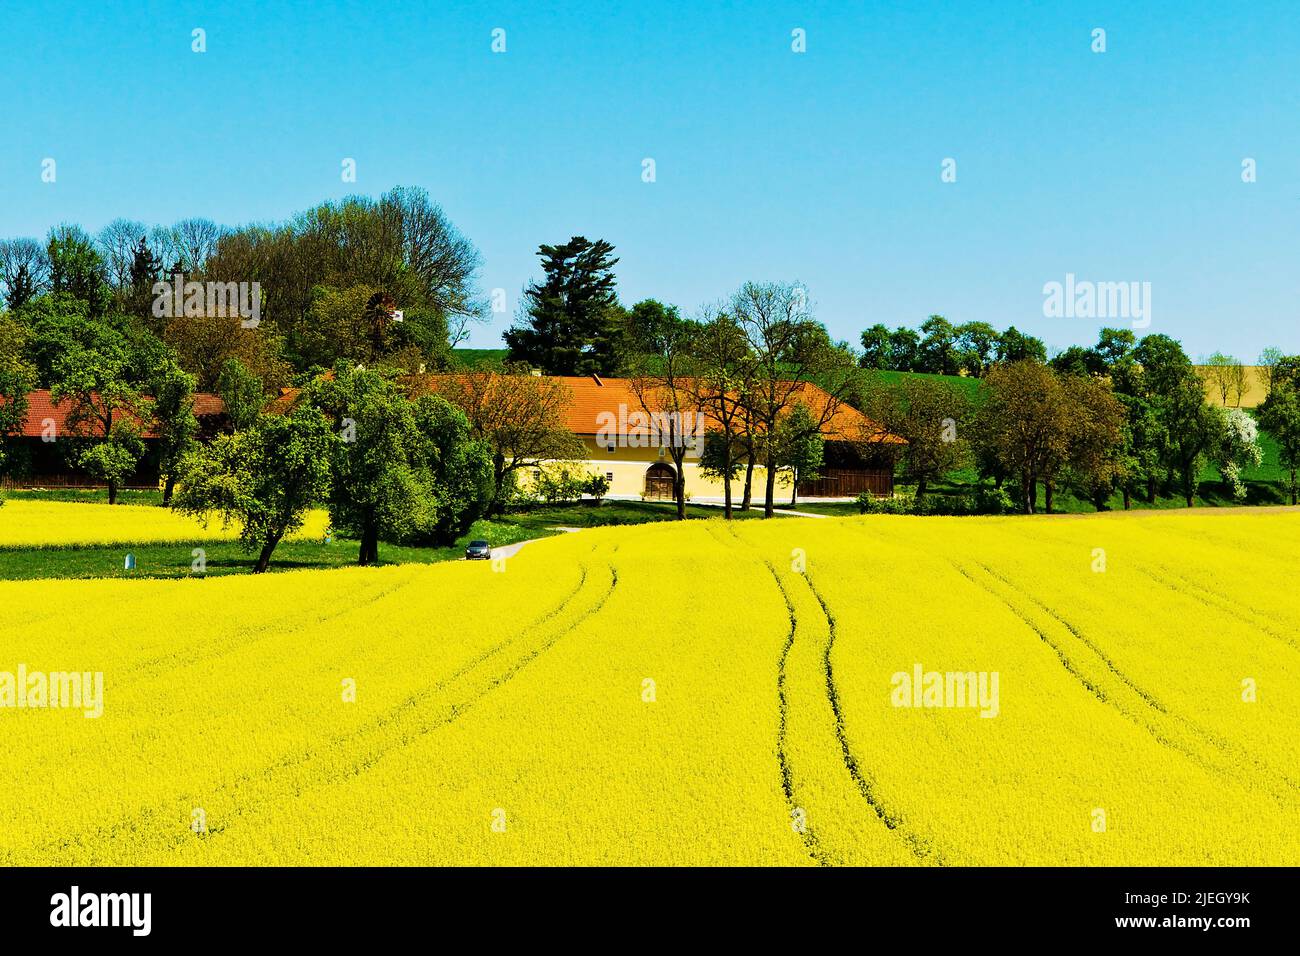 Ein gelbes Rapsfeld im Frühling vor einem Bauernhaus. Foto de stock